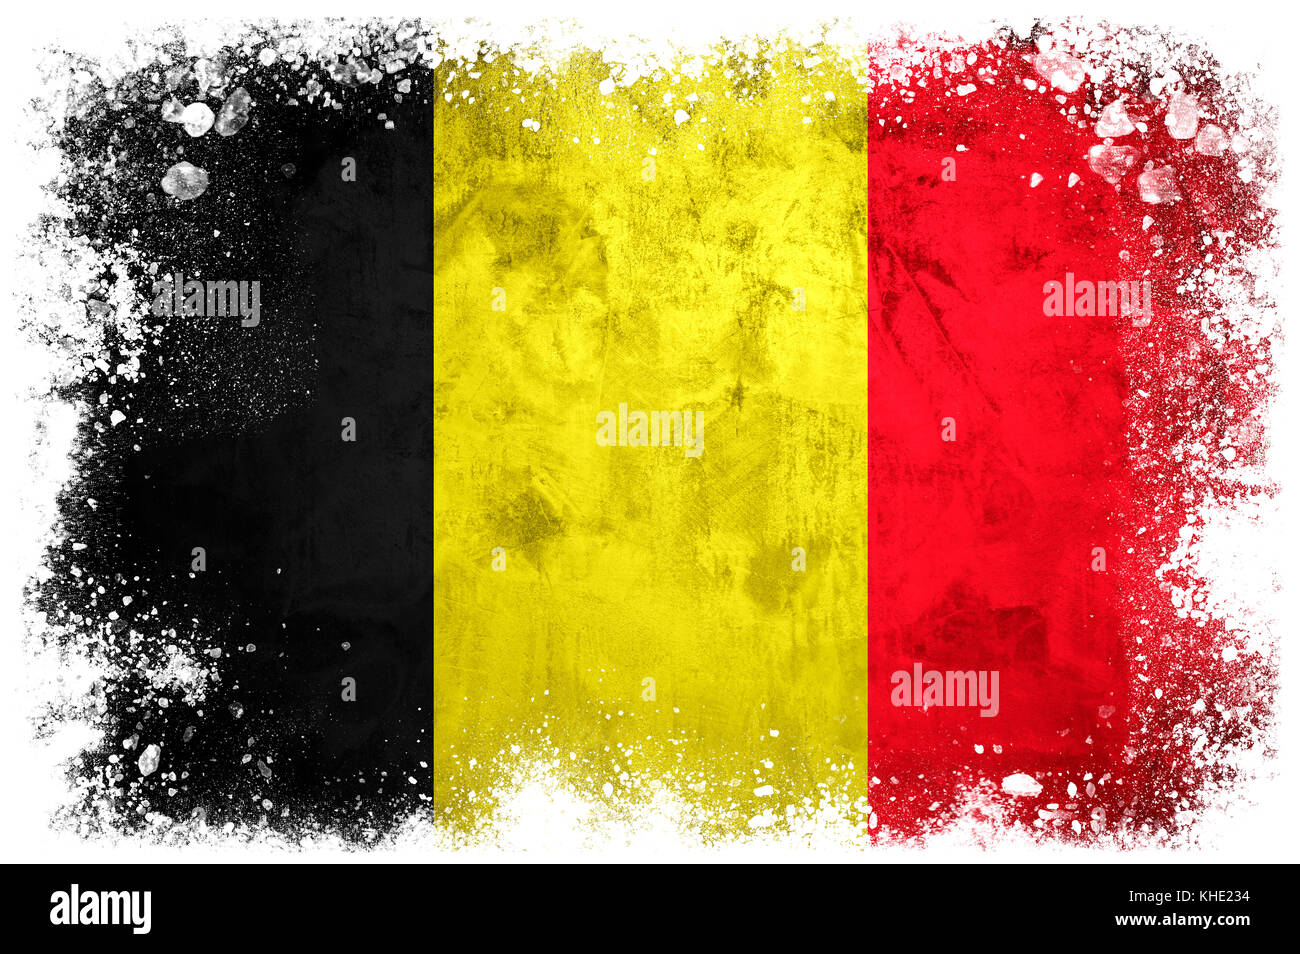 National flag of Belgium on grunge concrete background Stock Photo